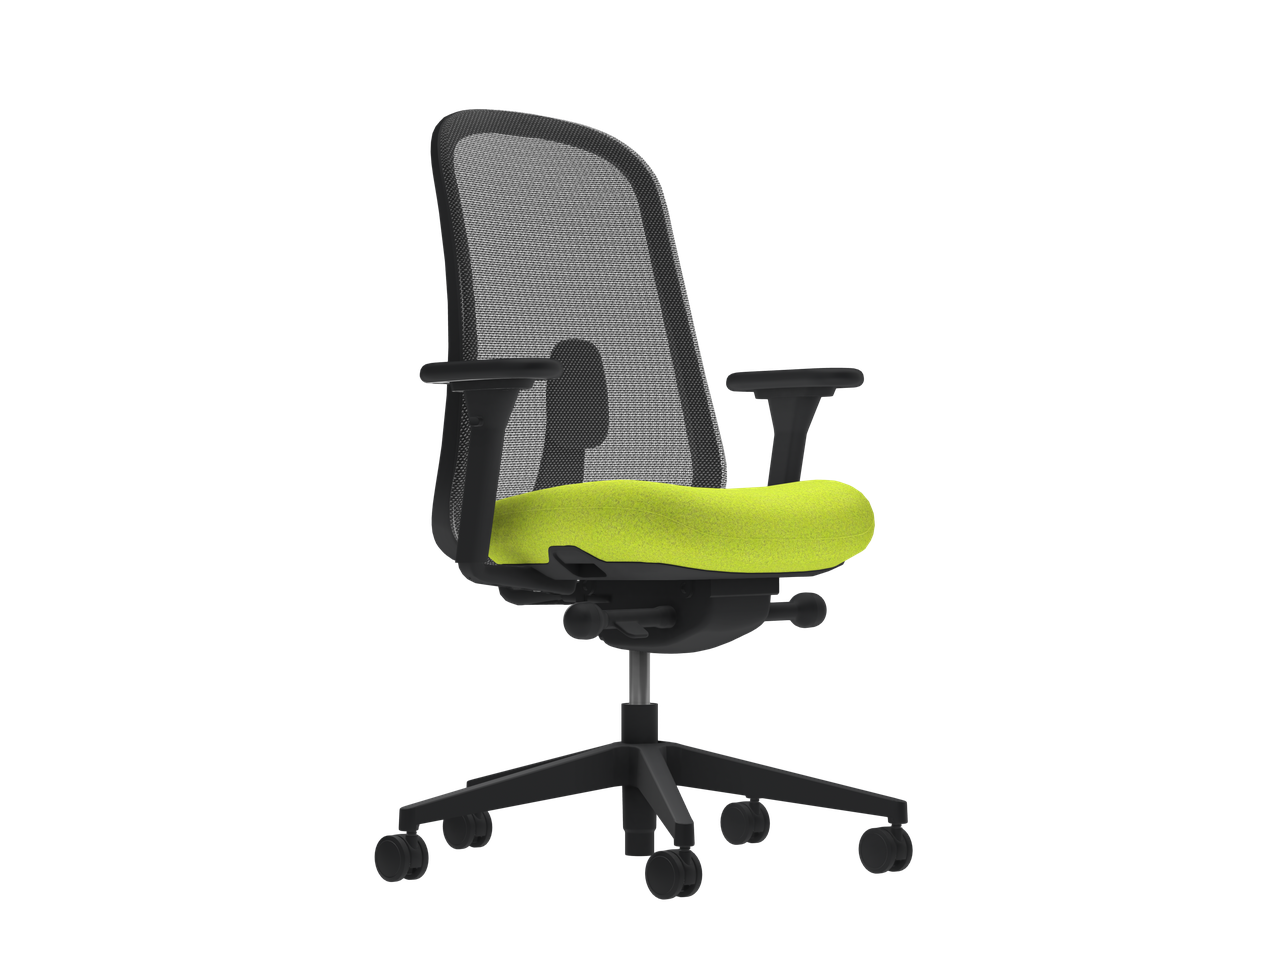 Ергономічне офісне крісло з профільованим сидінням Lino Mineral Frame and Base Phoenix Blizzard Салатовий